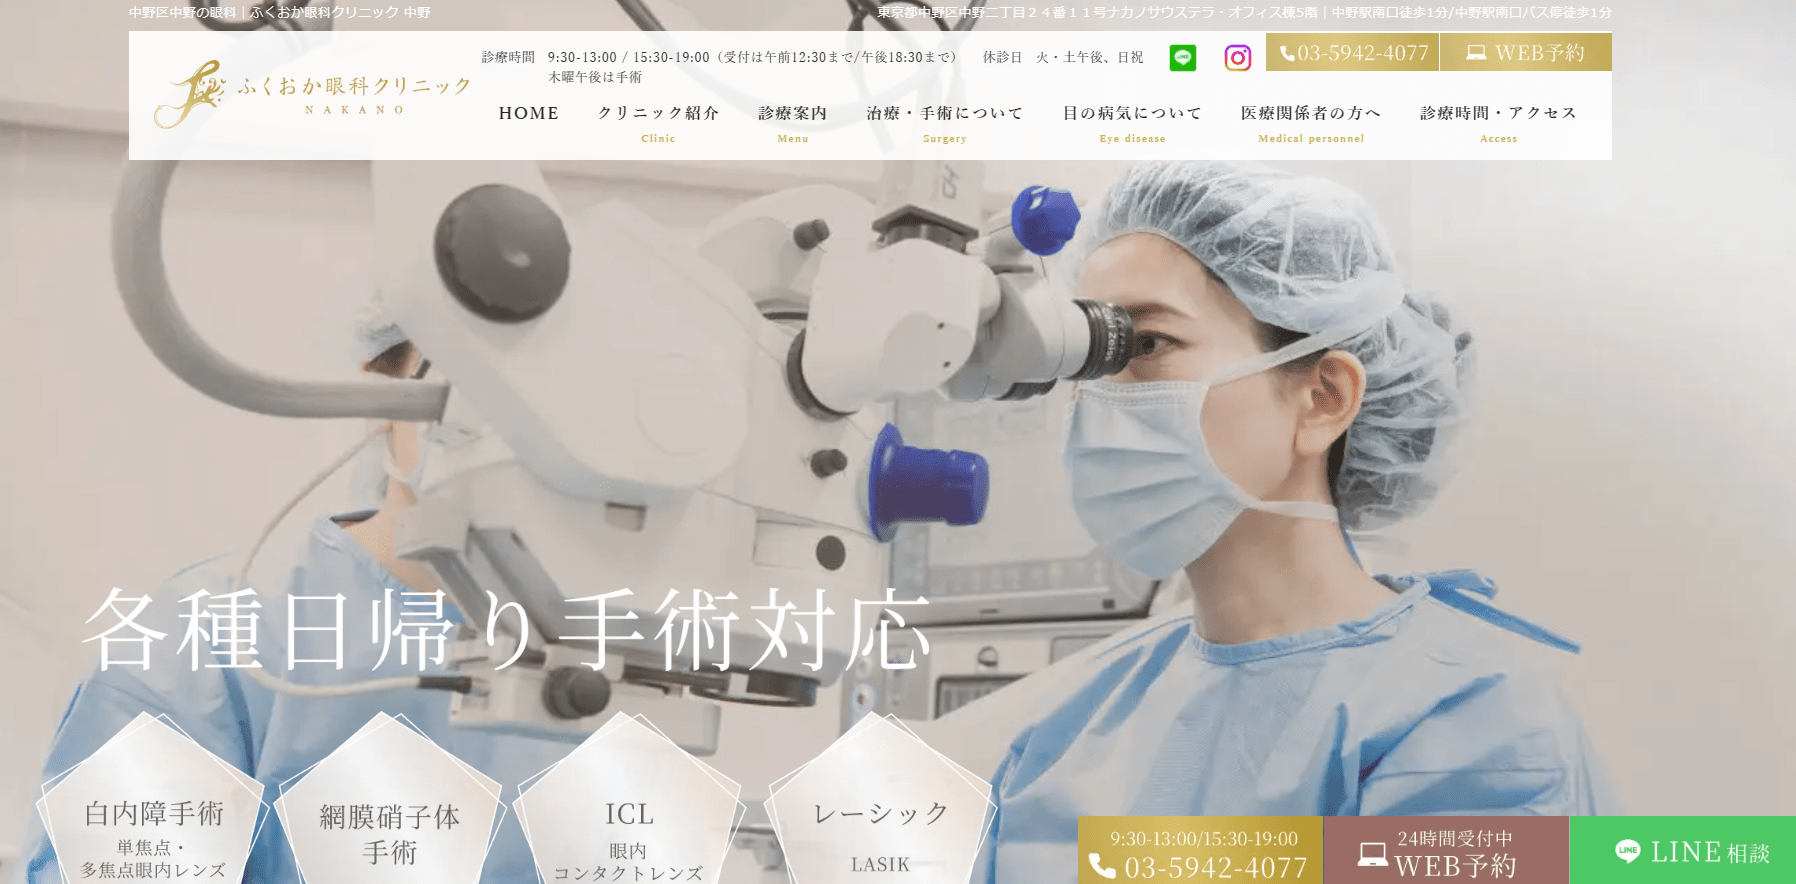 東京都で評判のレーシック手術におすすめのクリニック10選 ふくおか眼科クリニック 中野